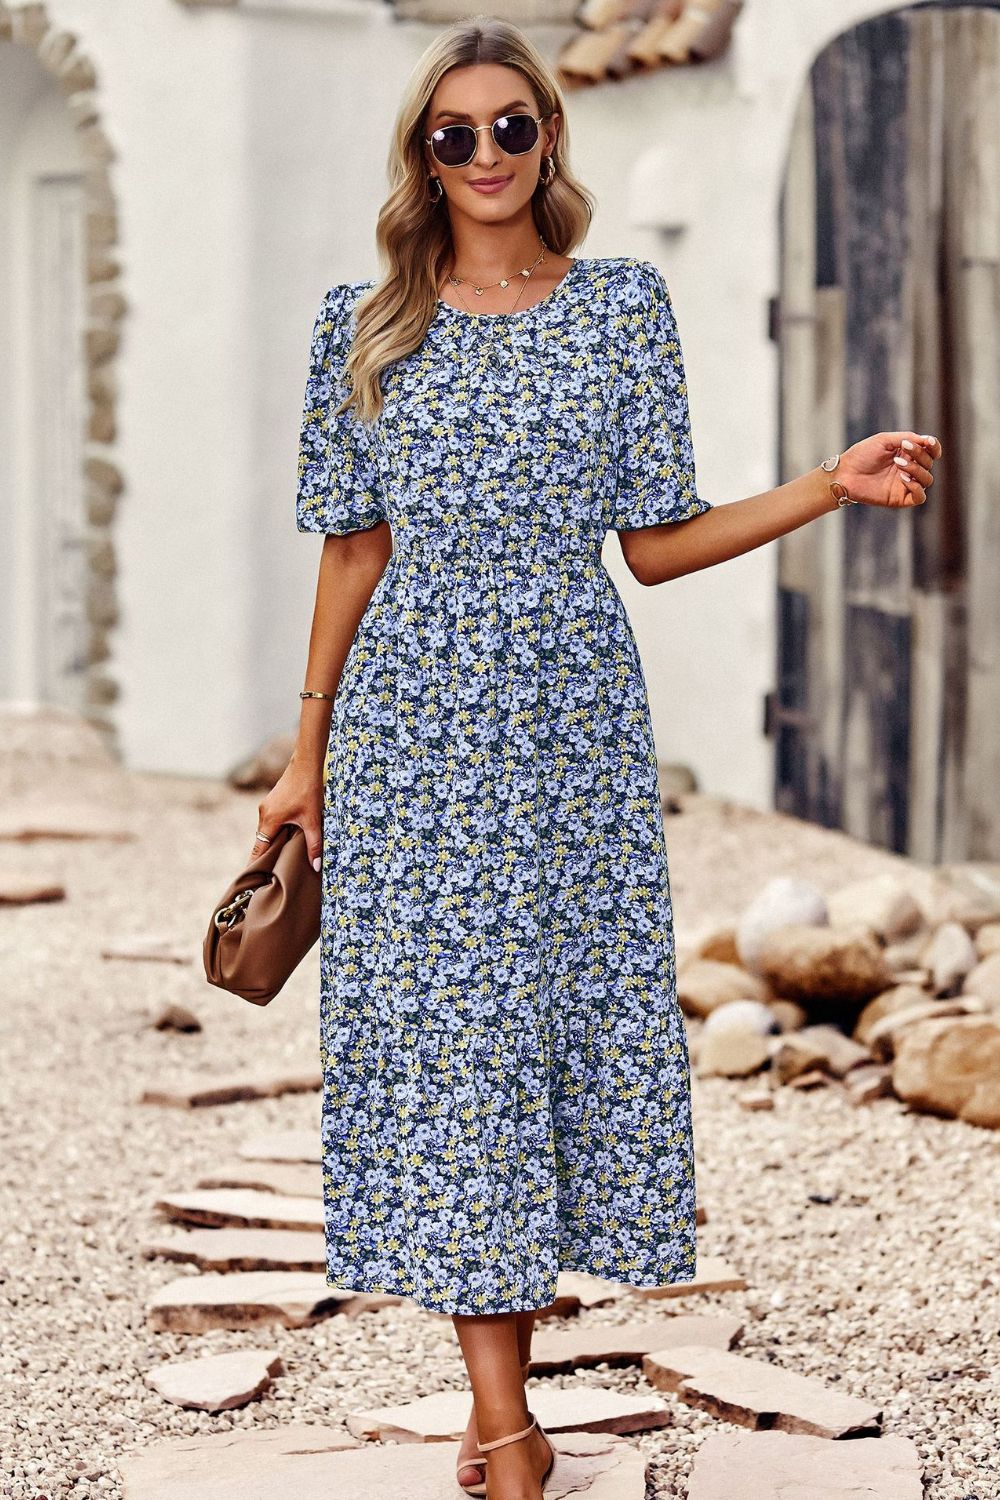 Floral Print Midi Dress with Cutout Back - blue floral midi dress with short puff sleeves. #Firefly Lane Boutique1